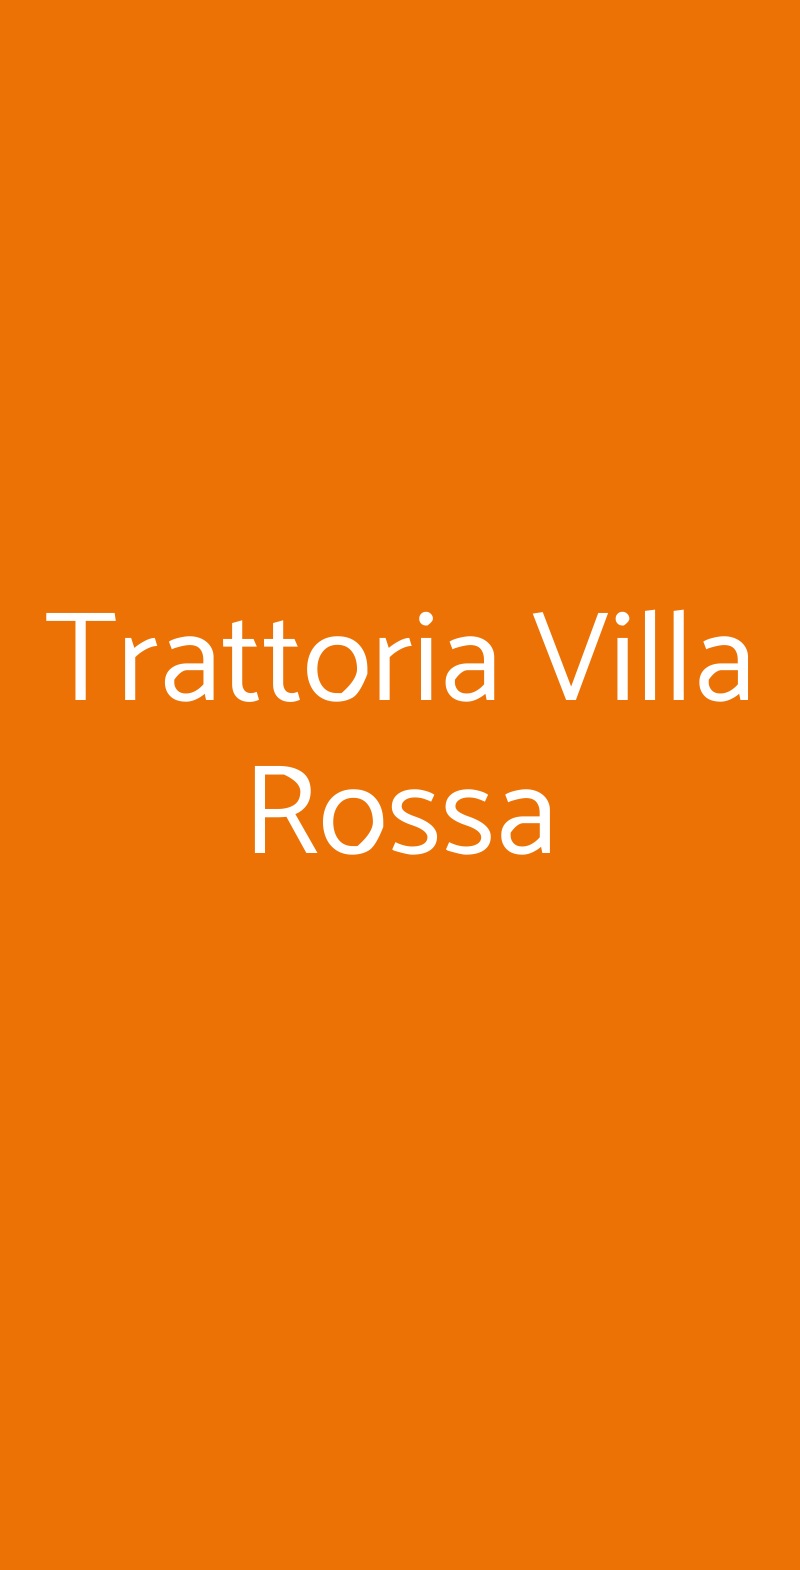 Trattoria Villa Rossa Carpenedolo menù 1 pagina